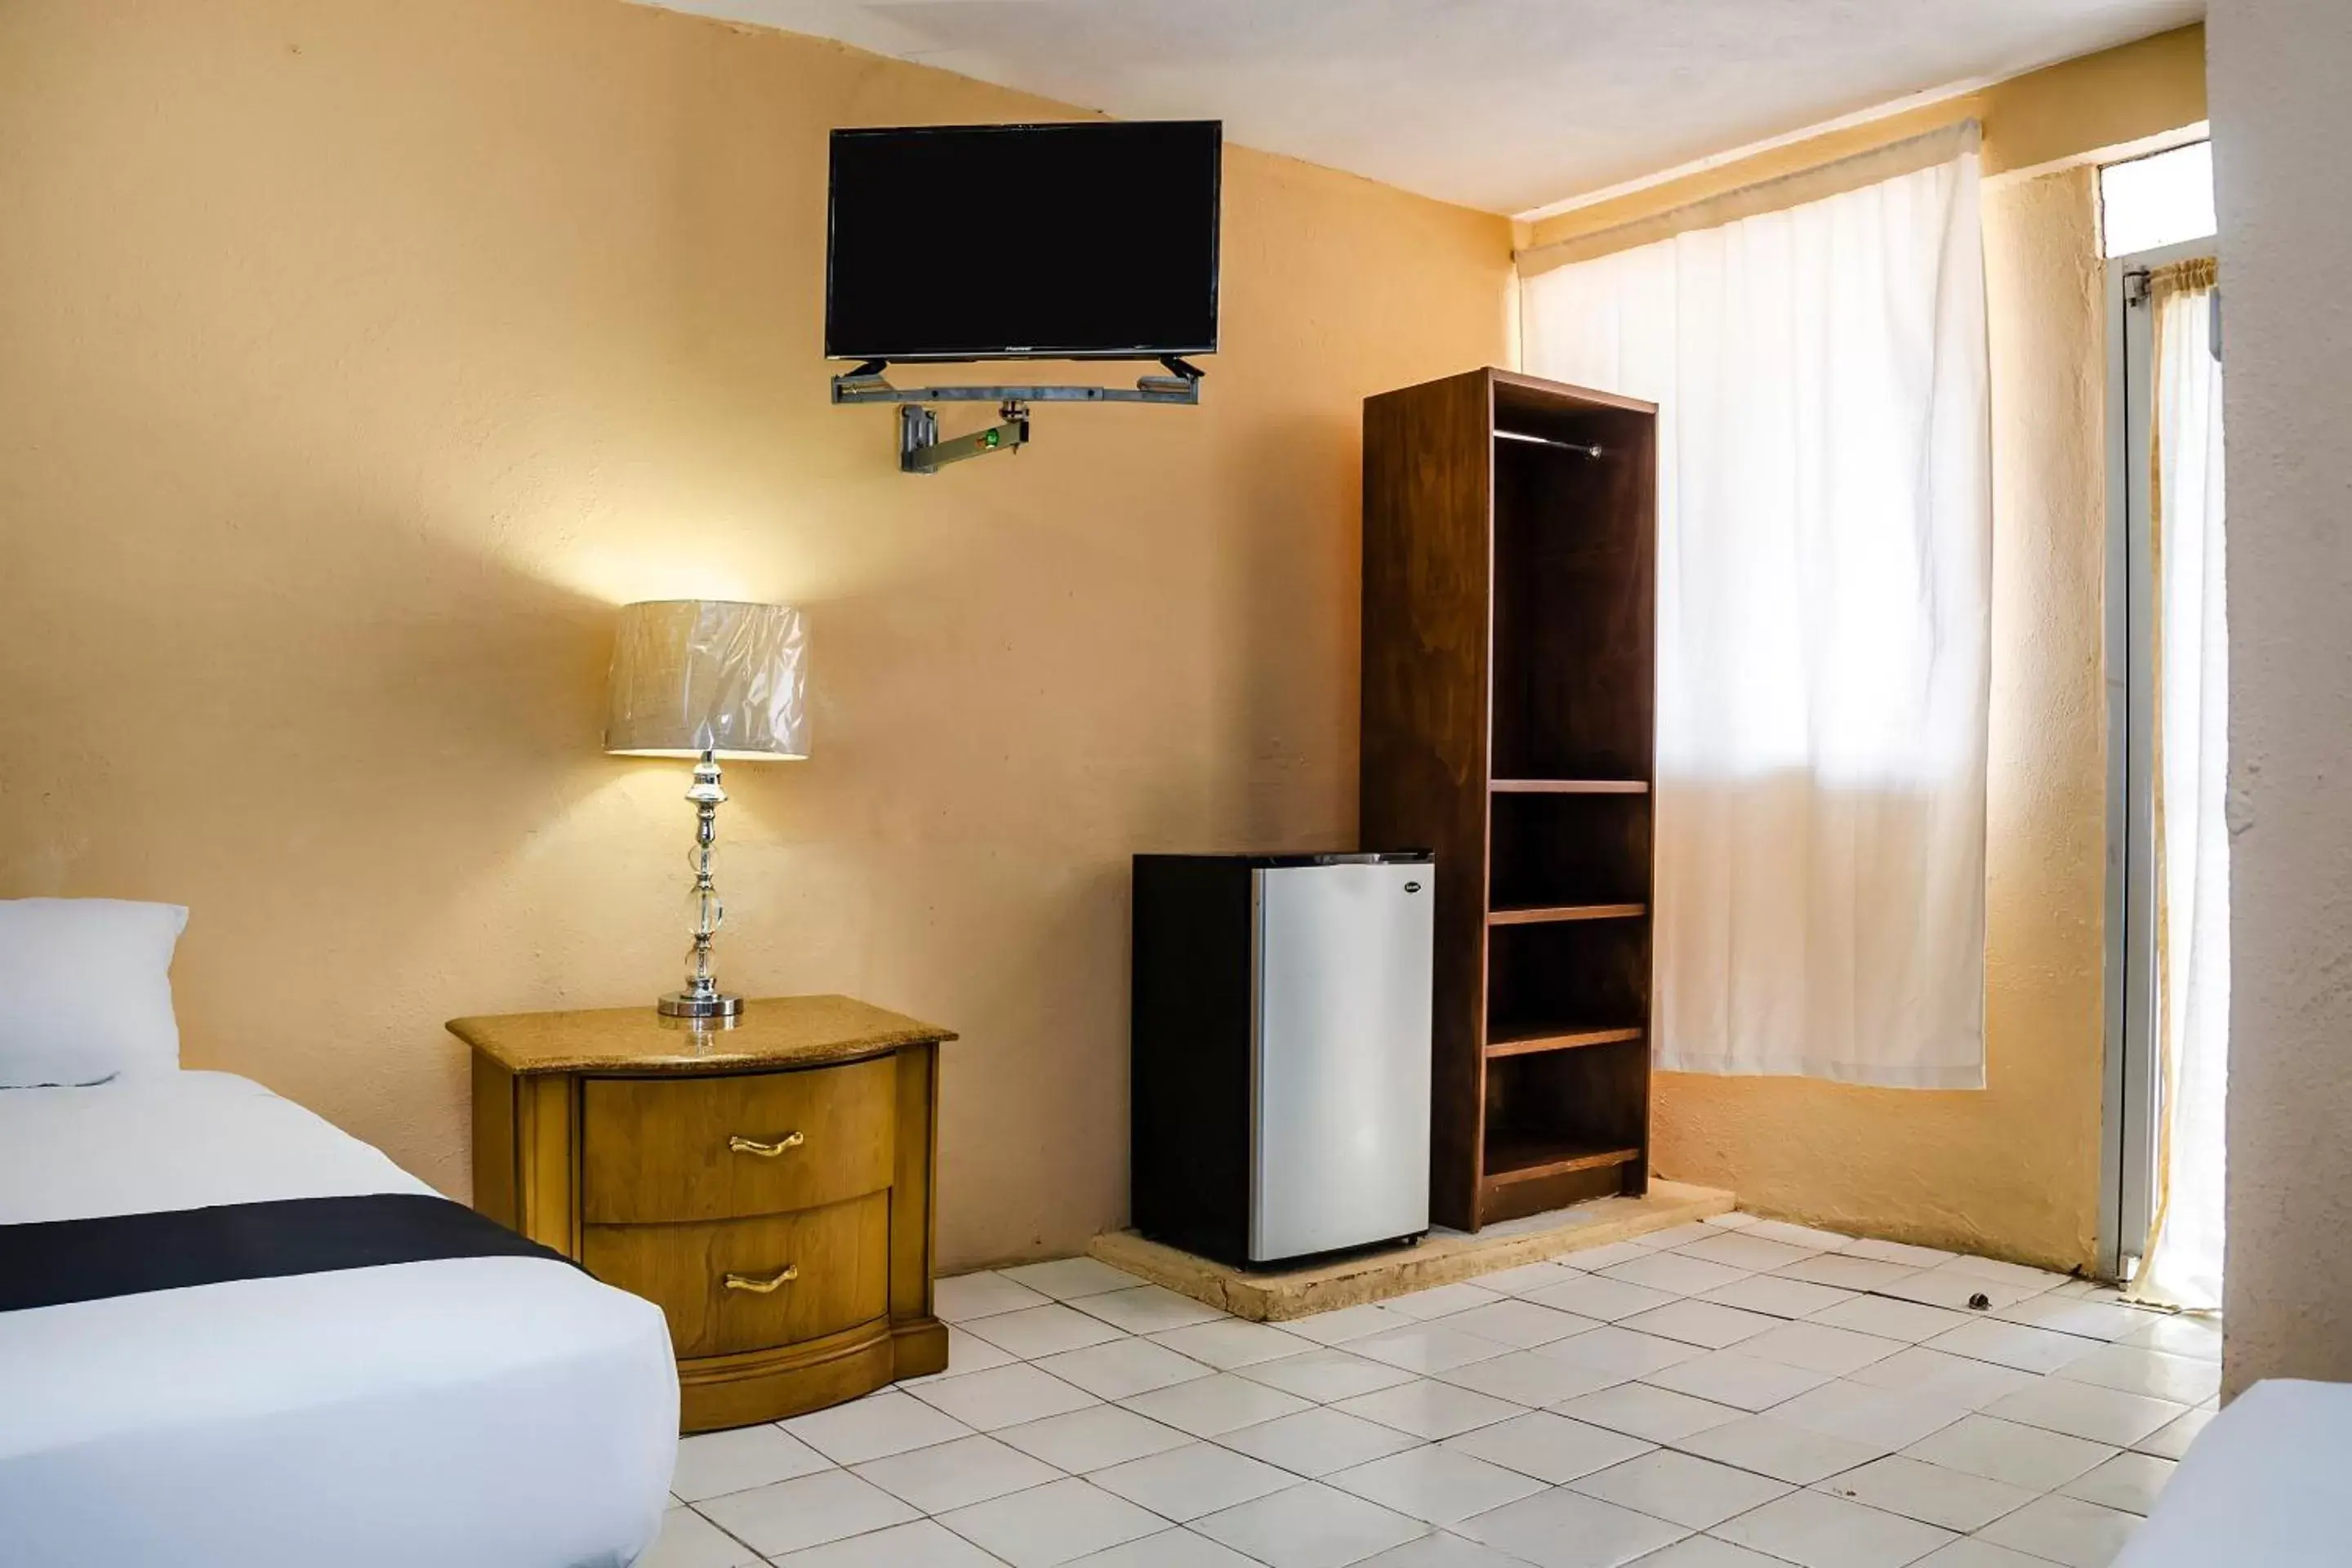 Bedroom, TV/Entertainment Center in Capital O Hotel Dos Mares, Cabo San Lucas